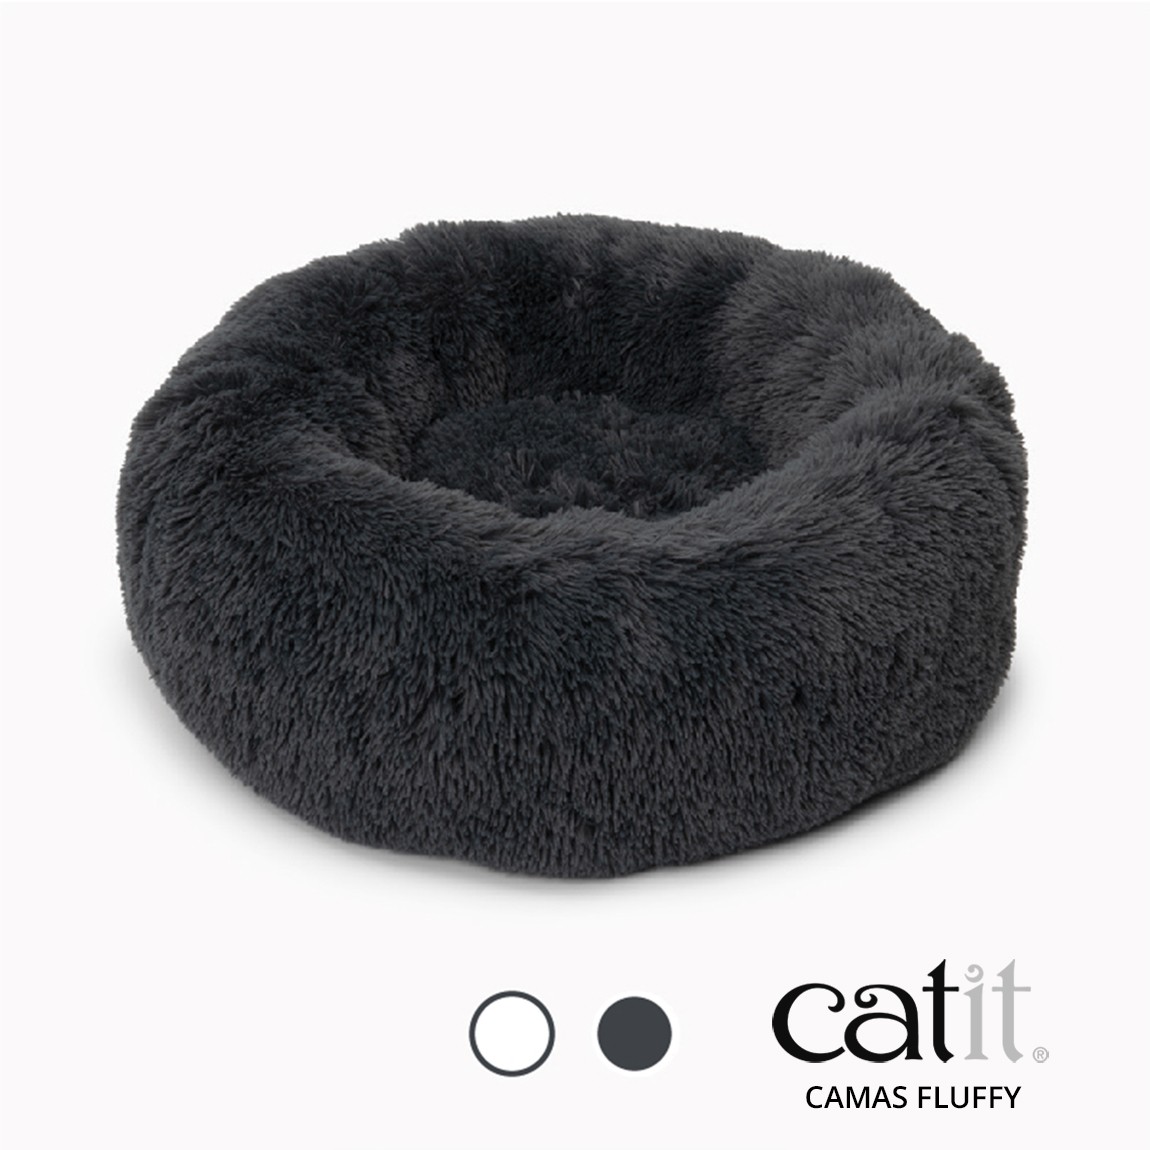 Catit Cama Fluffy de color gris oscuro para gatos